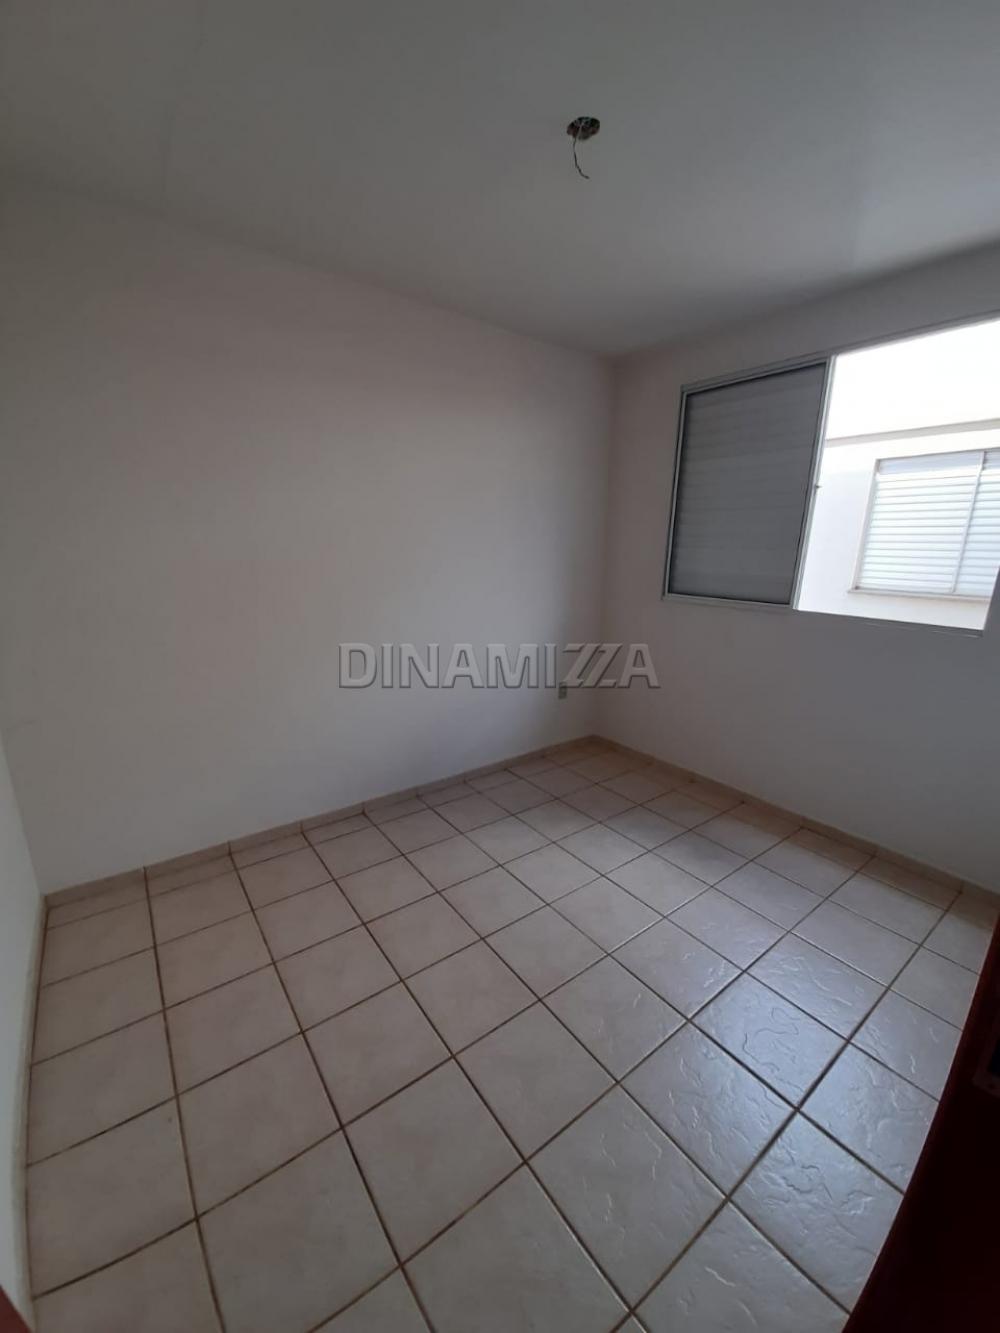 Comprar Apartamento / Padrão em Uberaba R$ 160.000,00 - Foto 7